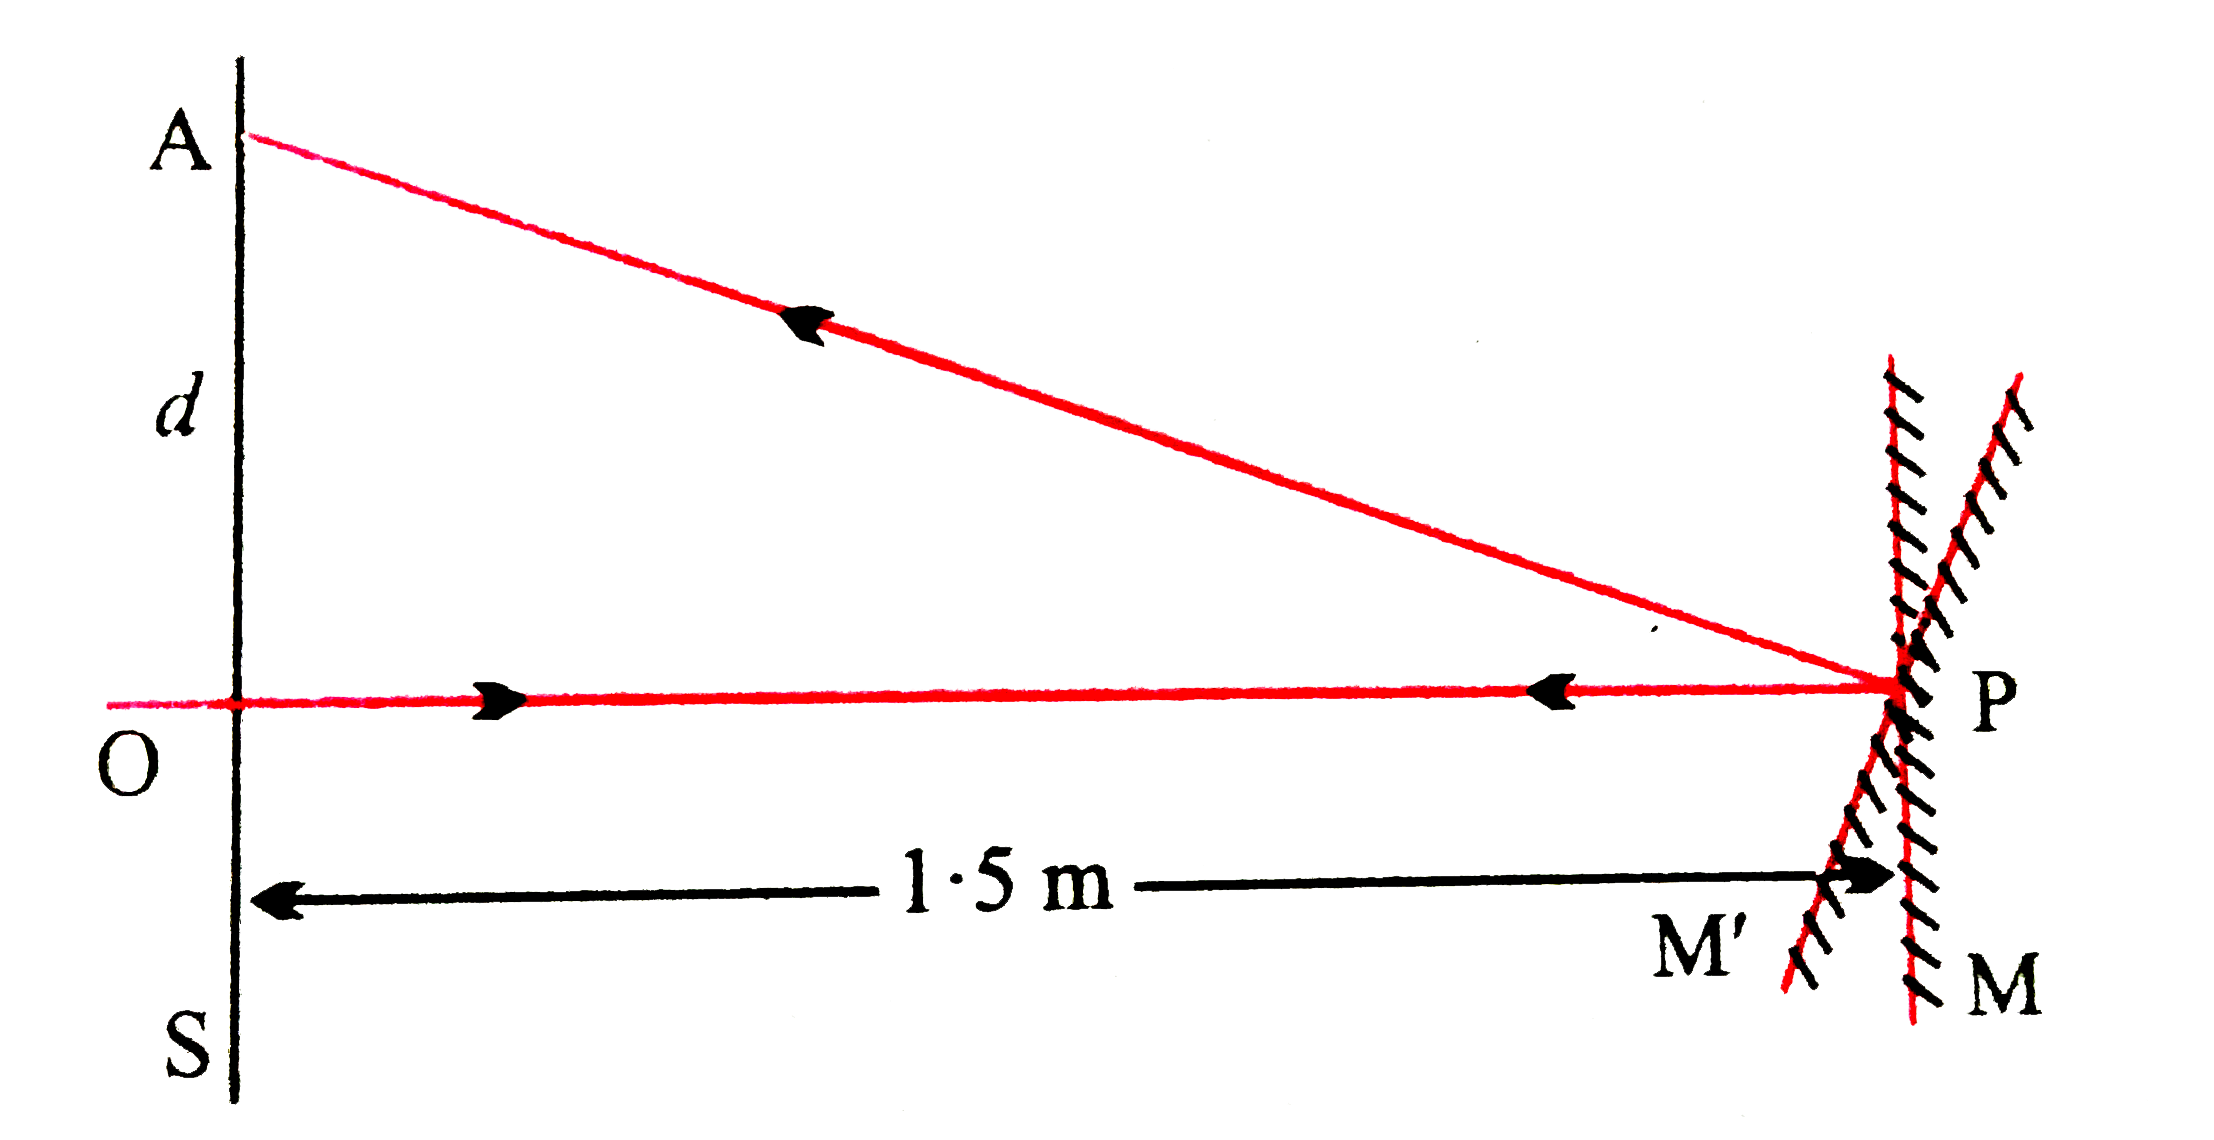 किसी गैल्वेनोमीटर की कुण्डली से जुड़े समतल दर्पण पर लंबवत आपतित प्रकाश दर्पण से टकराकर अपना पथ पुनः अनुरेखित करता है । गैल्वेनोमीटर की कुंडली में प्रवाहित कोई धारा दर्पण में 3.5^@ का परिक्षेपण उत्पन्न करती हैं। दर्पण के सामने 1.5 मी. दूरी पर रखे परदे पर प्रकाश के परावर्तन चिन्ह में कितना विस्थापन होगा ?